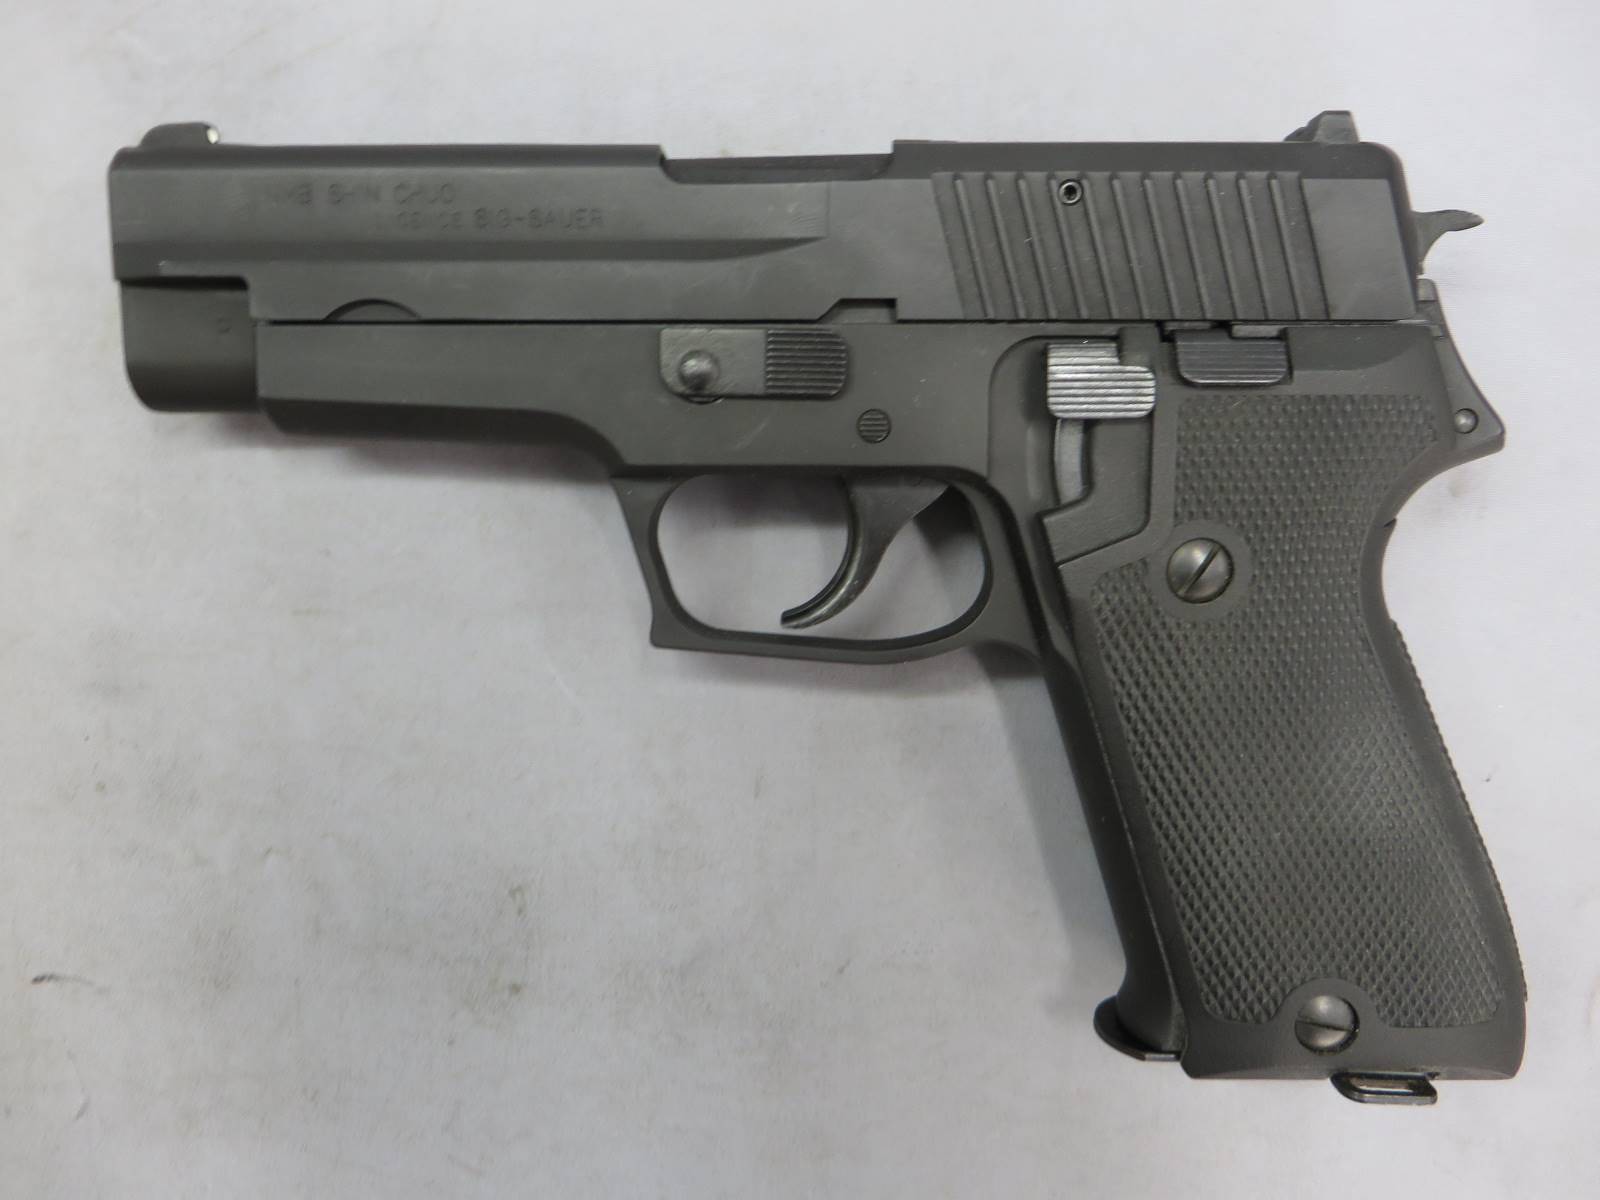 【タナカ】SIG P220 HW 陸上自衛隊 9ｍｍ拳銃 エボリューション 　モデルガン